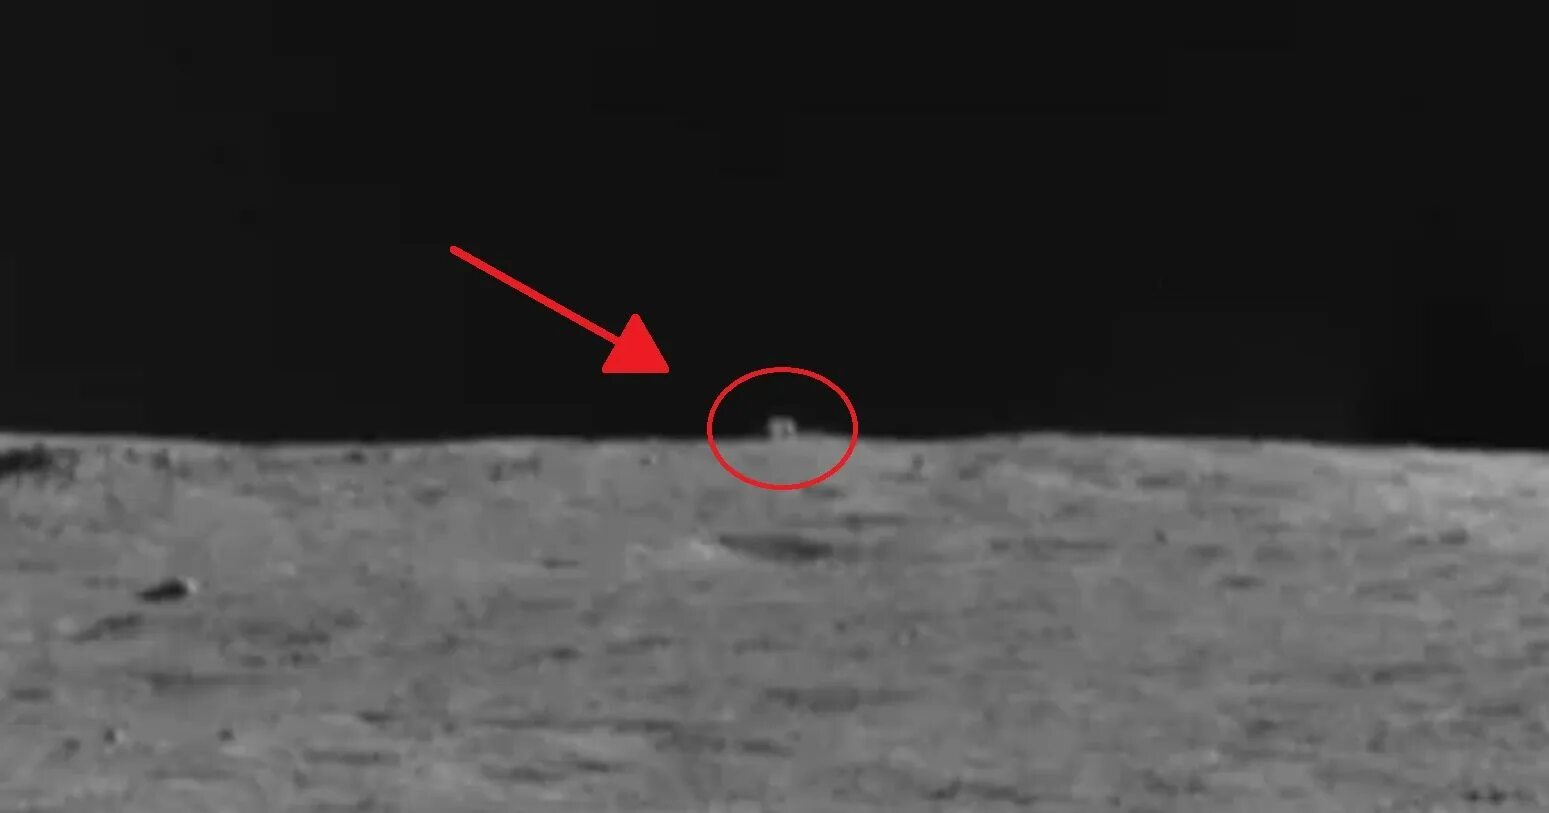 Человек который впервые оказался на поверхности луны. Китайский Луноход на обратной стороне Луны. Китайский Луноход Юйту. Юйту-2. Китайский Луноход обнаружил хижину на обратной стороне Луны.